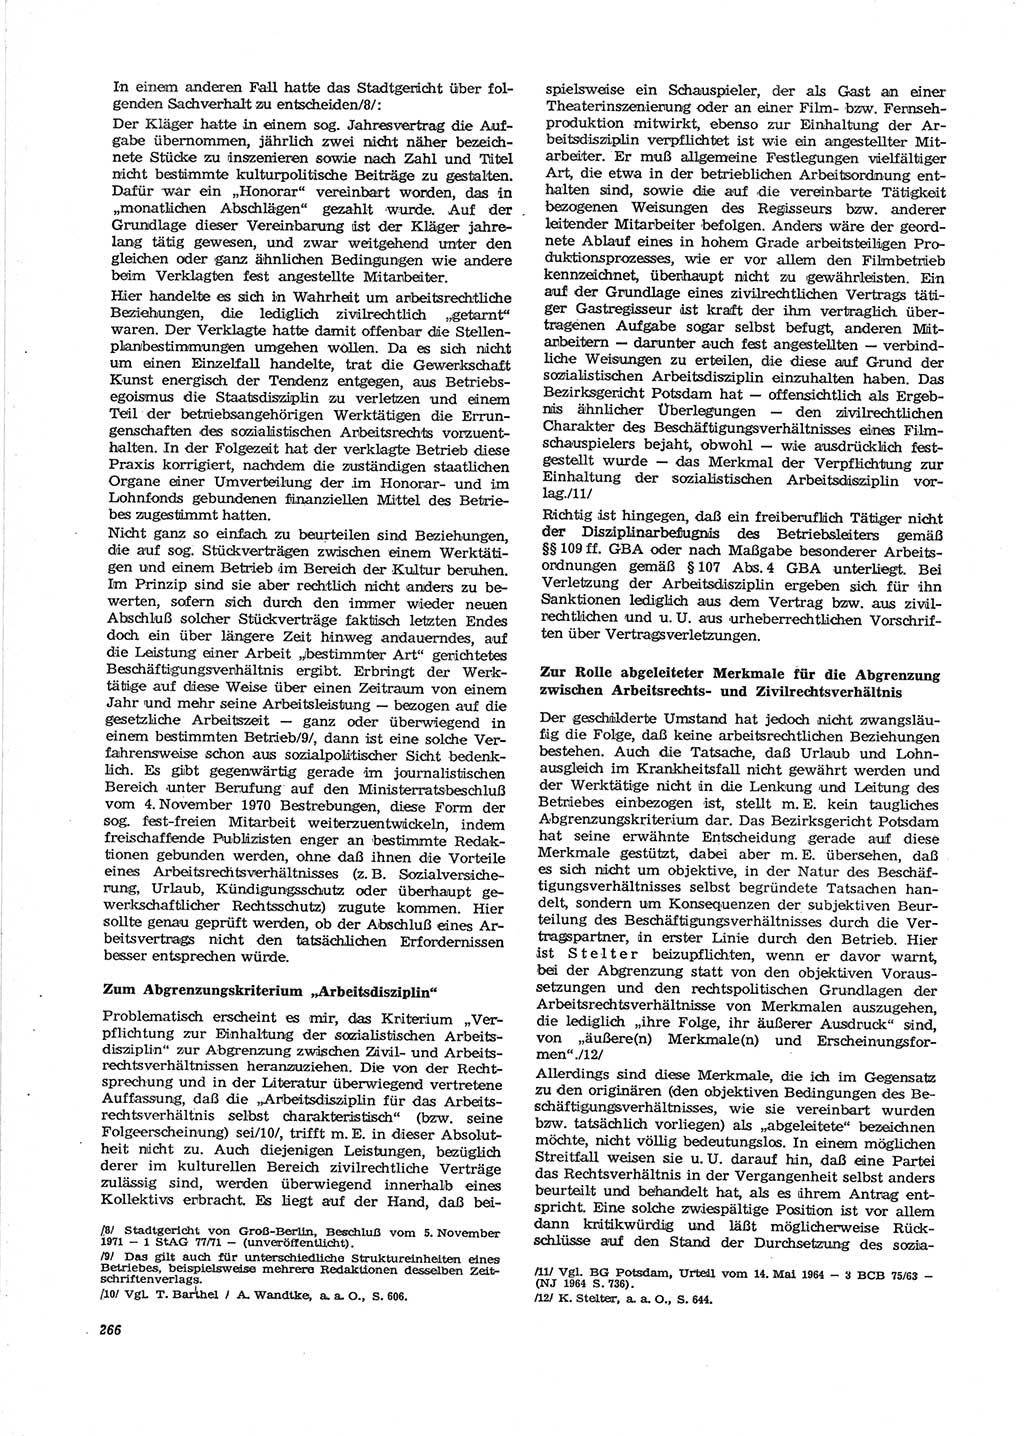 Neue Justiz (NJ), Zeitschrift für Recht und Rechtswissenschaft [Deutsche Demokratische Republik (DDR)], 28. Jahrgang 1974, Seite 266 (NJ DDR 1974, S. 266)